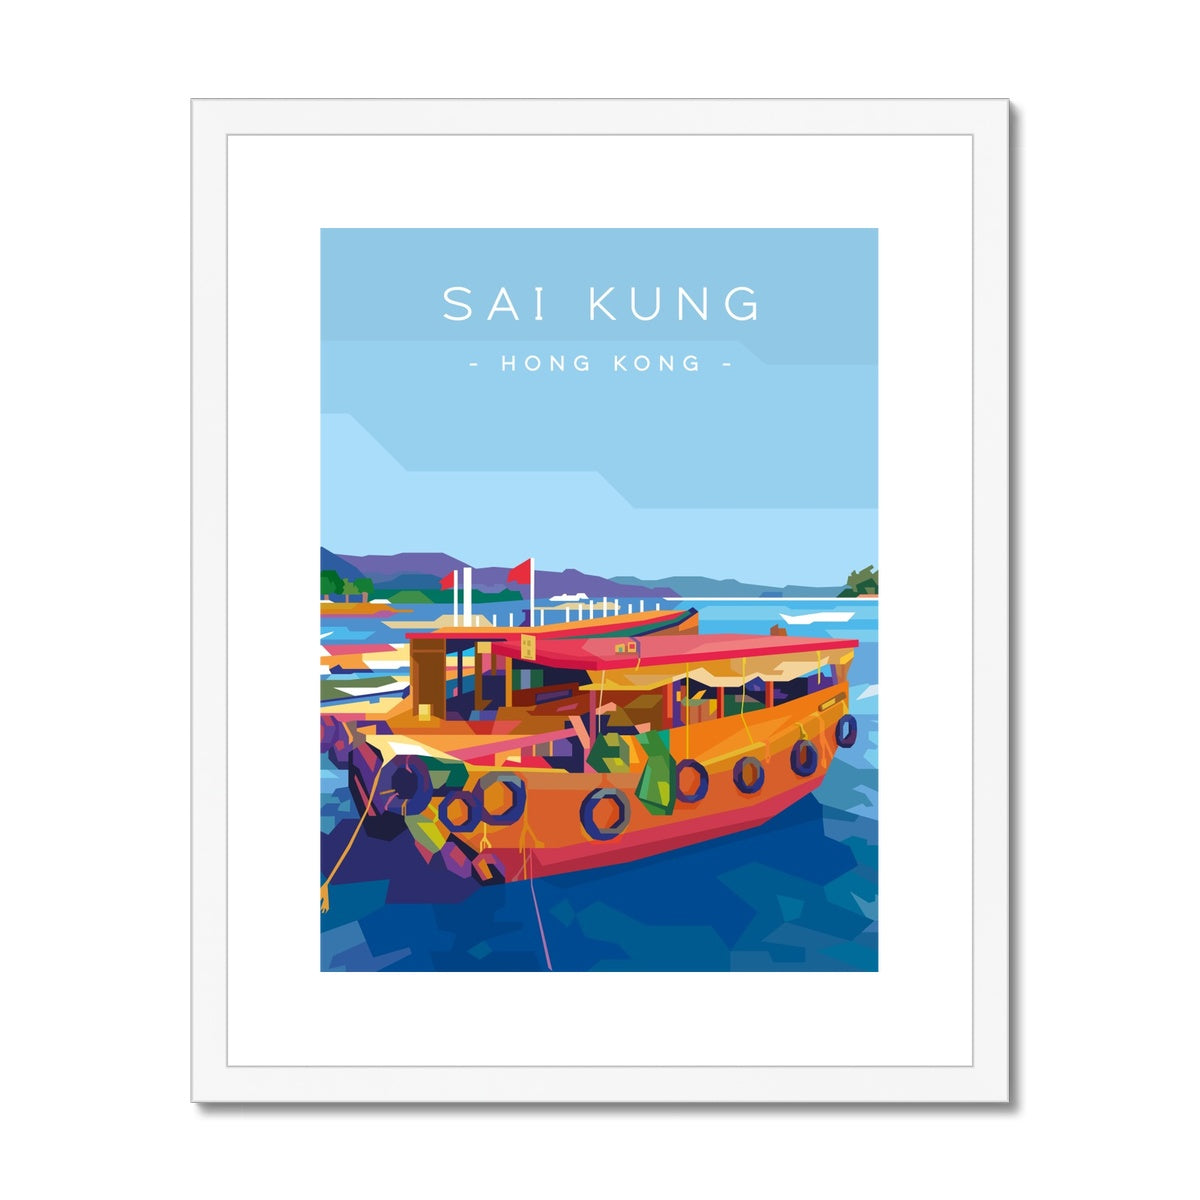 Hong Kong Travel - Sai Kung Sampans Framed & Mounted Print